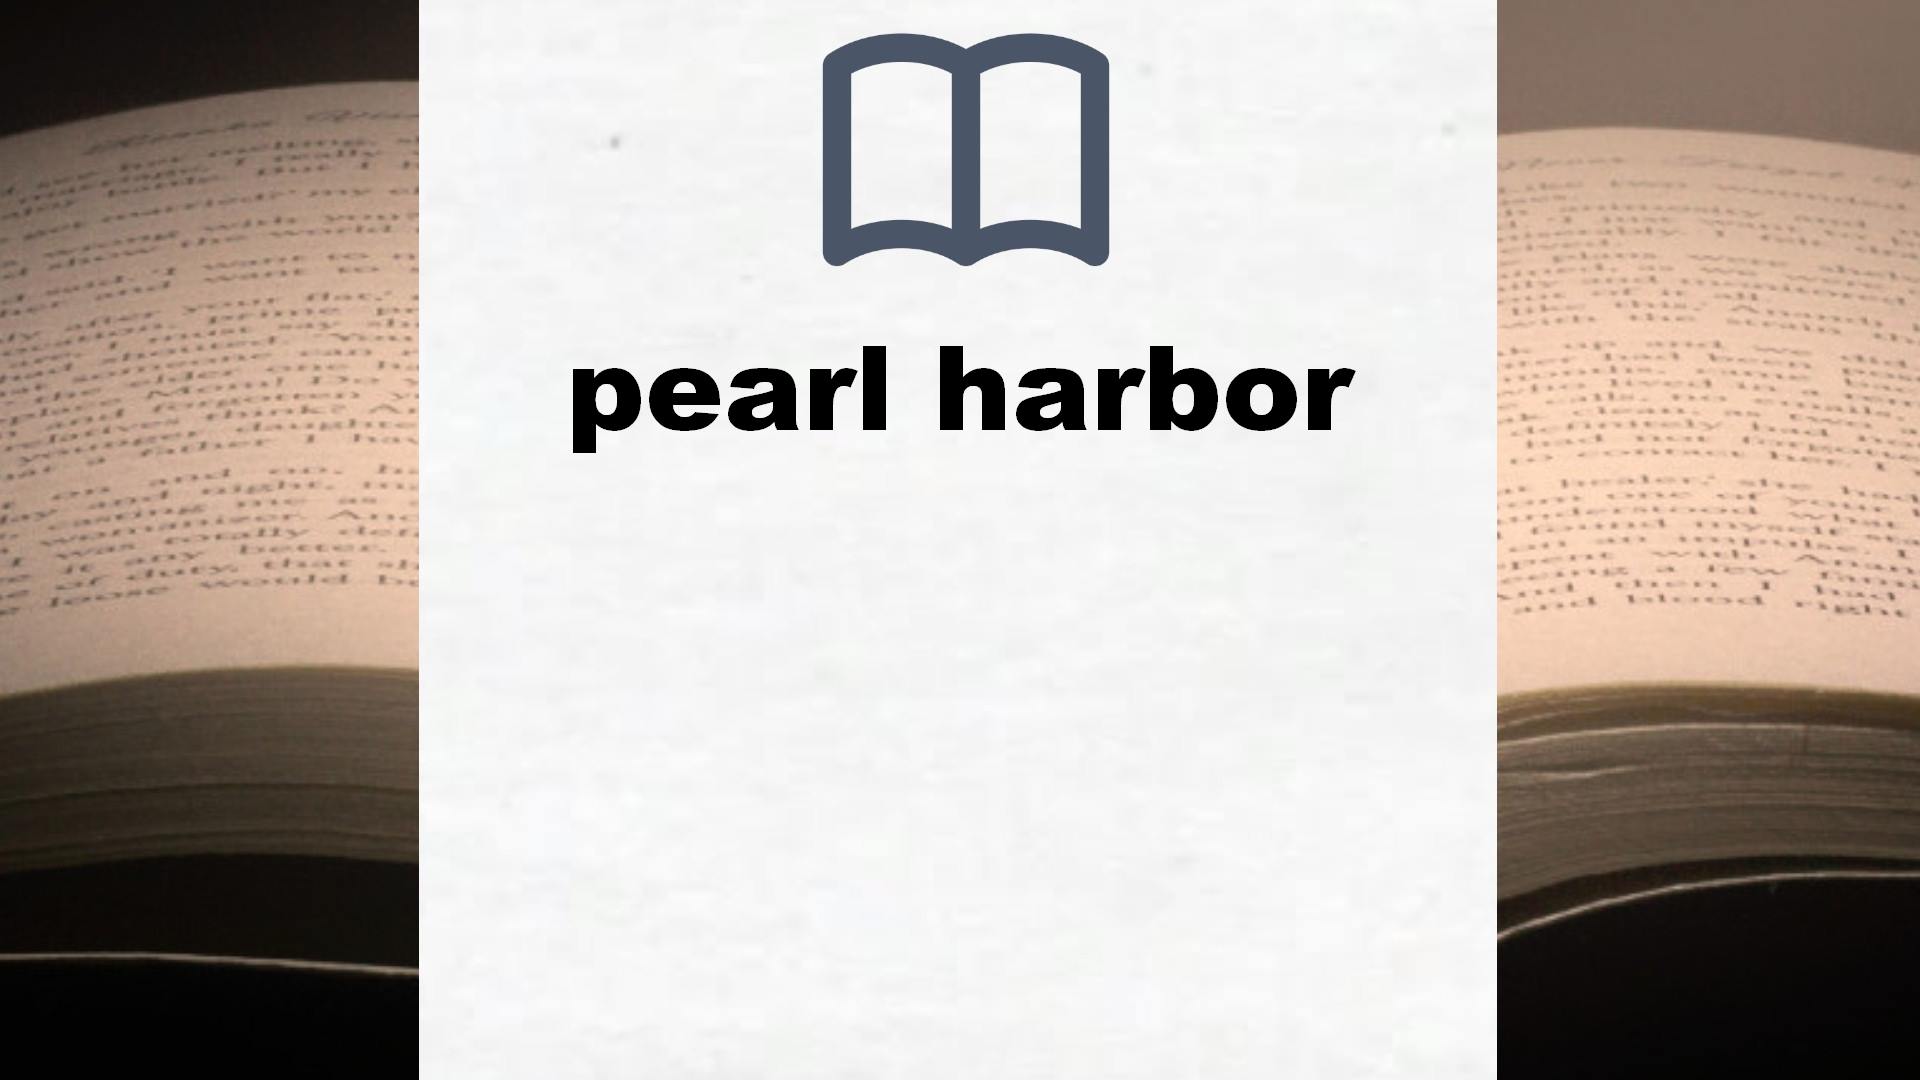 Libros sobre pearl harbor